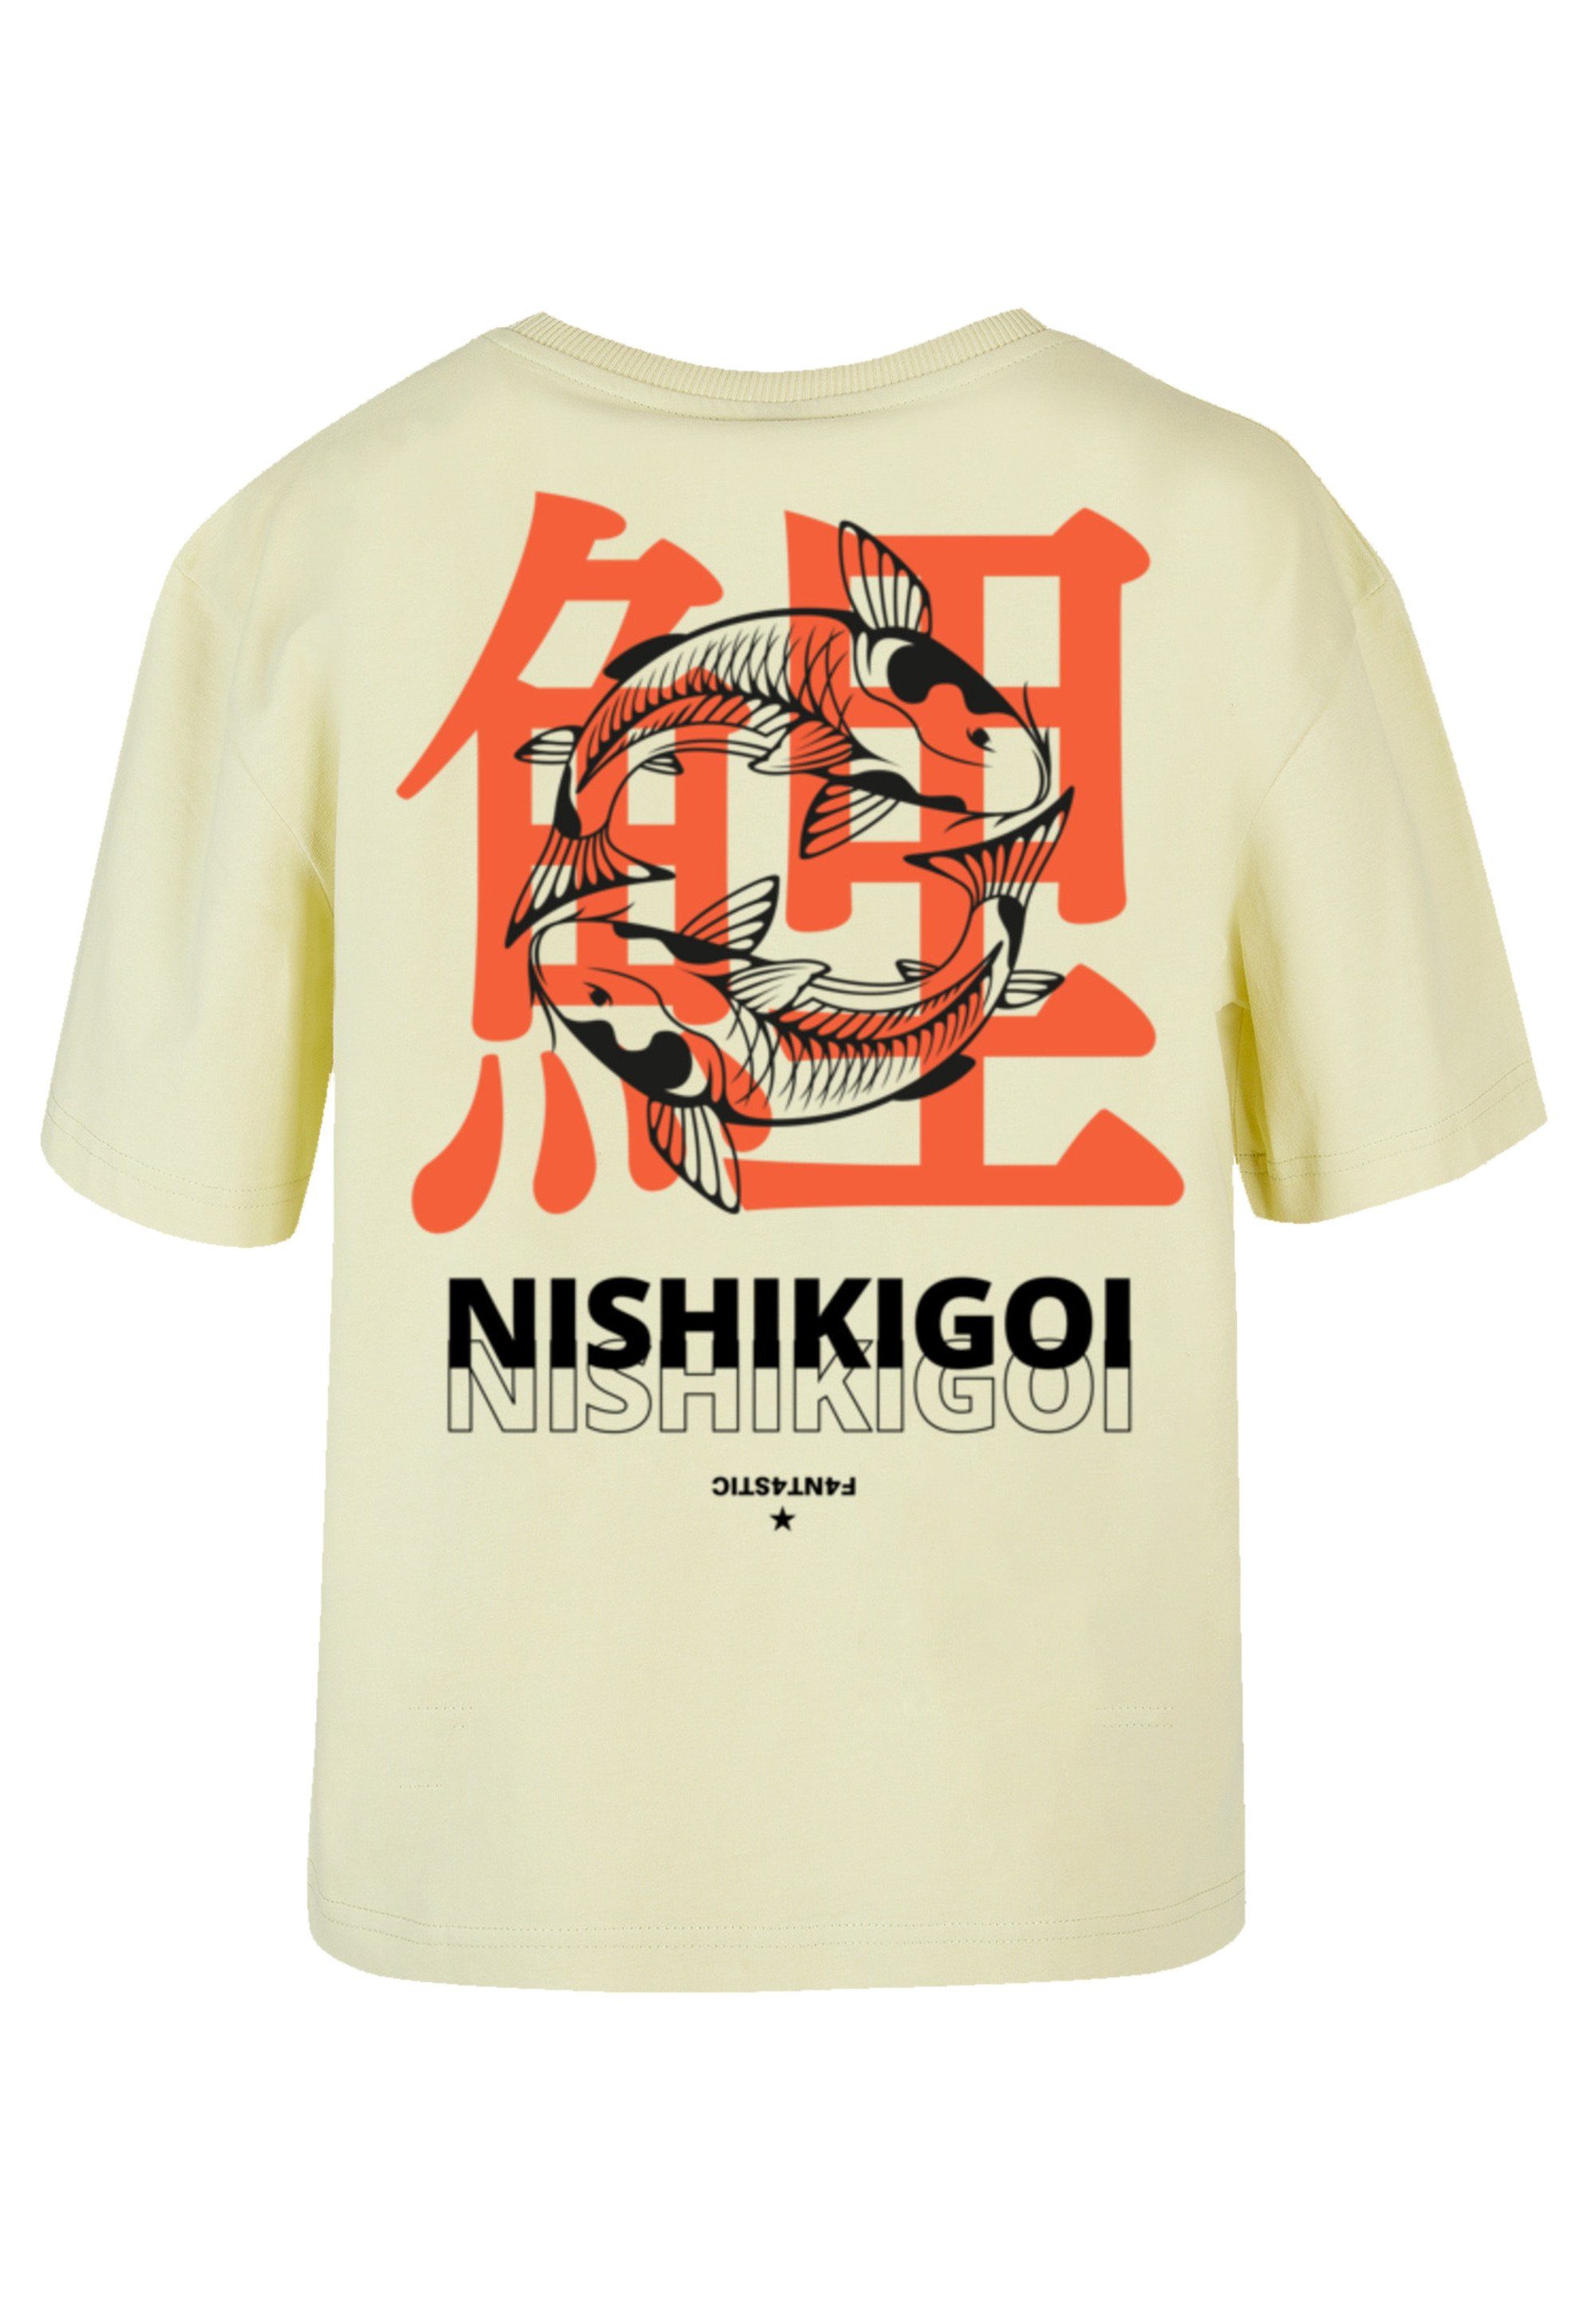 Look F4NT4STIC für Japan stylischen Gerippter Nishikigoi T-Shirt Rundhalsausschnitt Print,